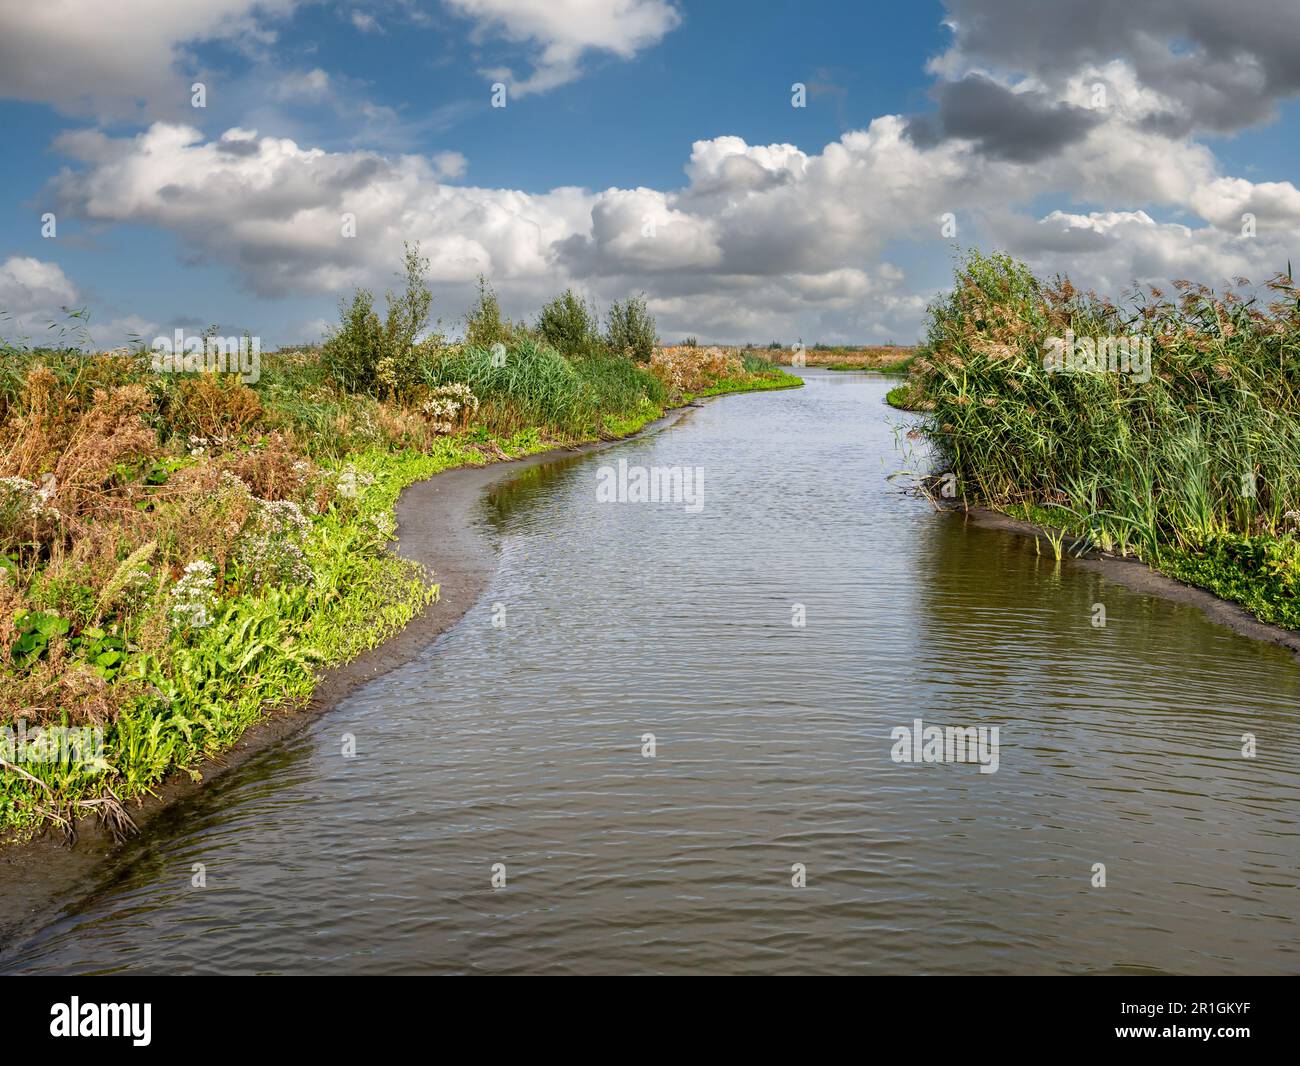 Marschland mit Bach, Sumpfvegetation, Schlammflächen und geschütztem, flachem Wasser auf der Insel Marker Wadden, Niederlande Stockfoto